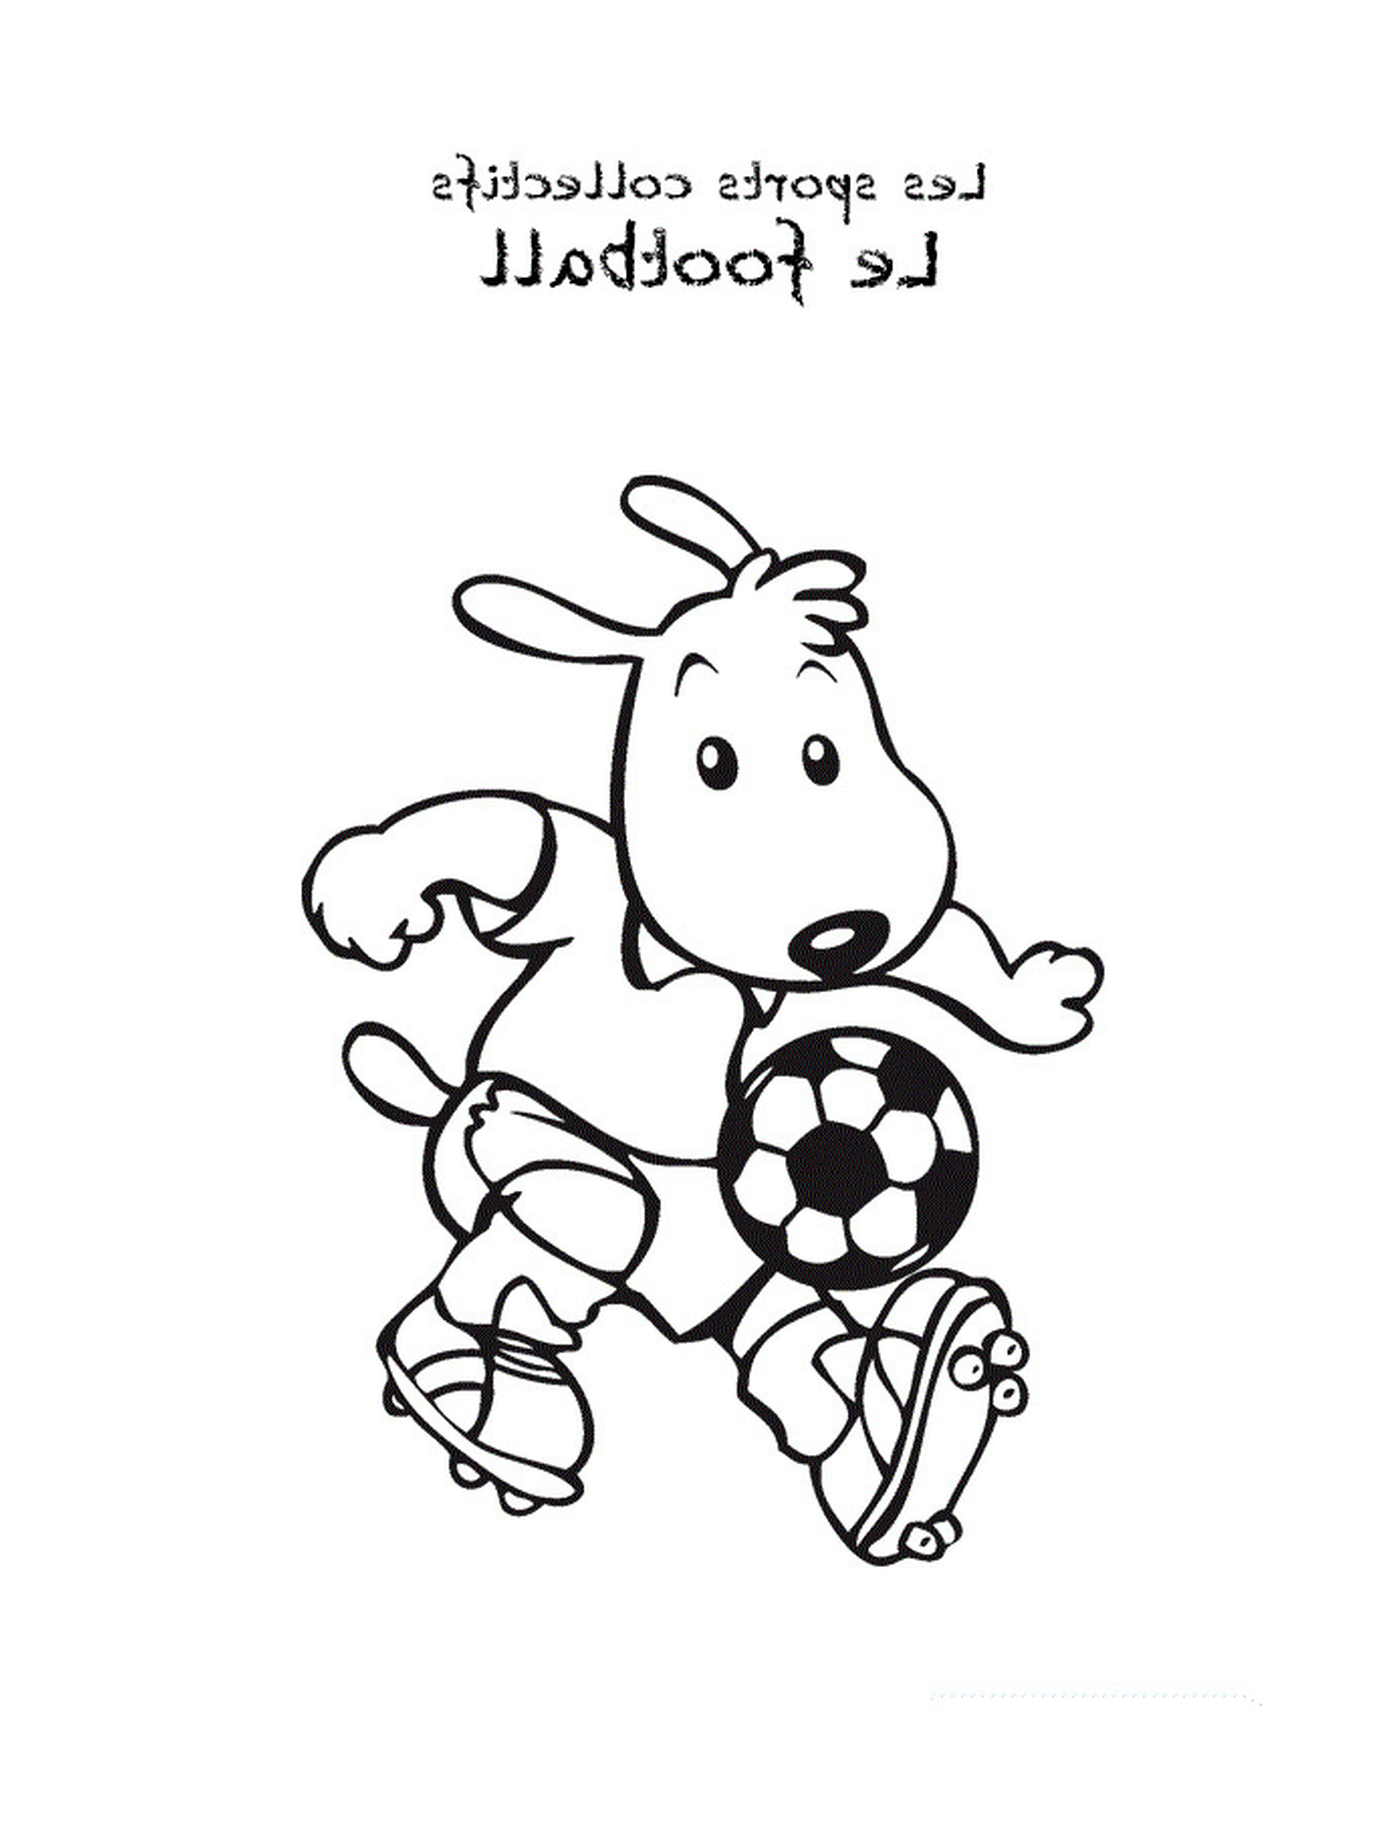   Un chien joue au foot 